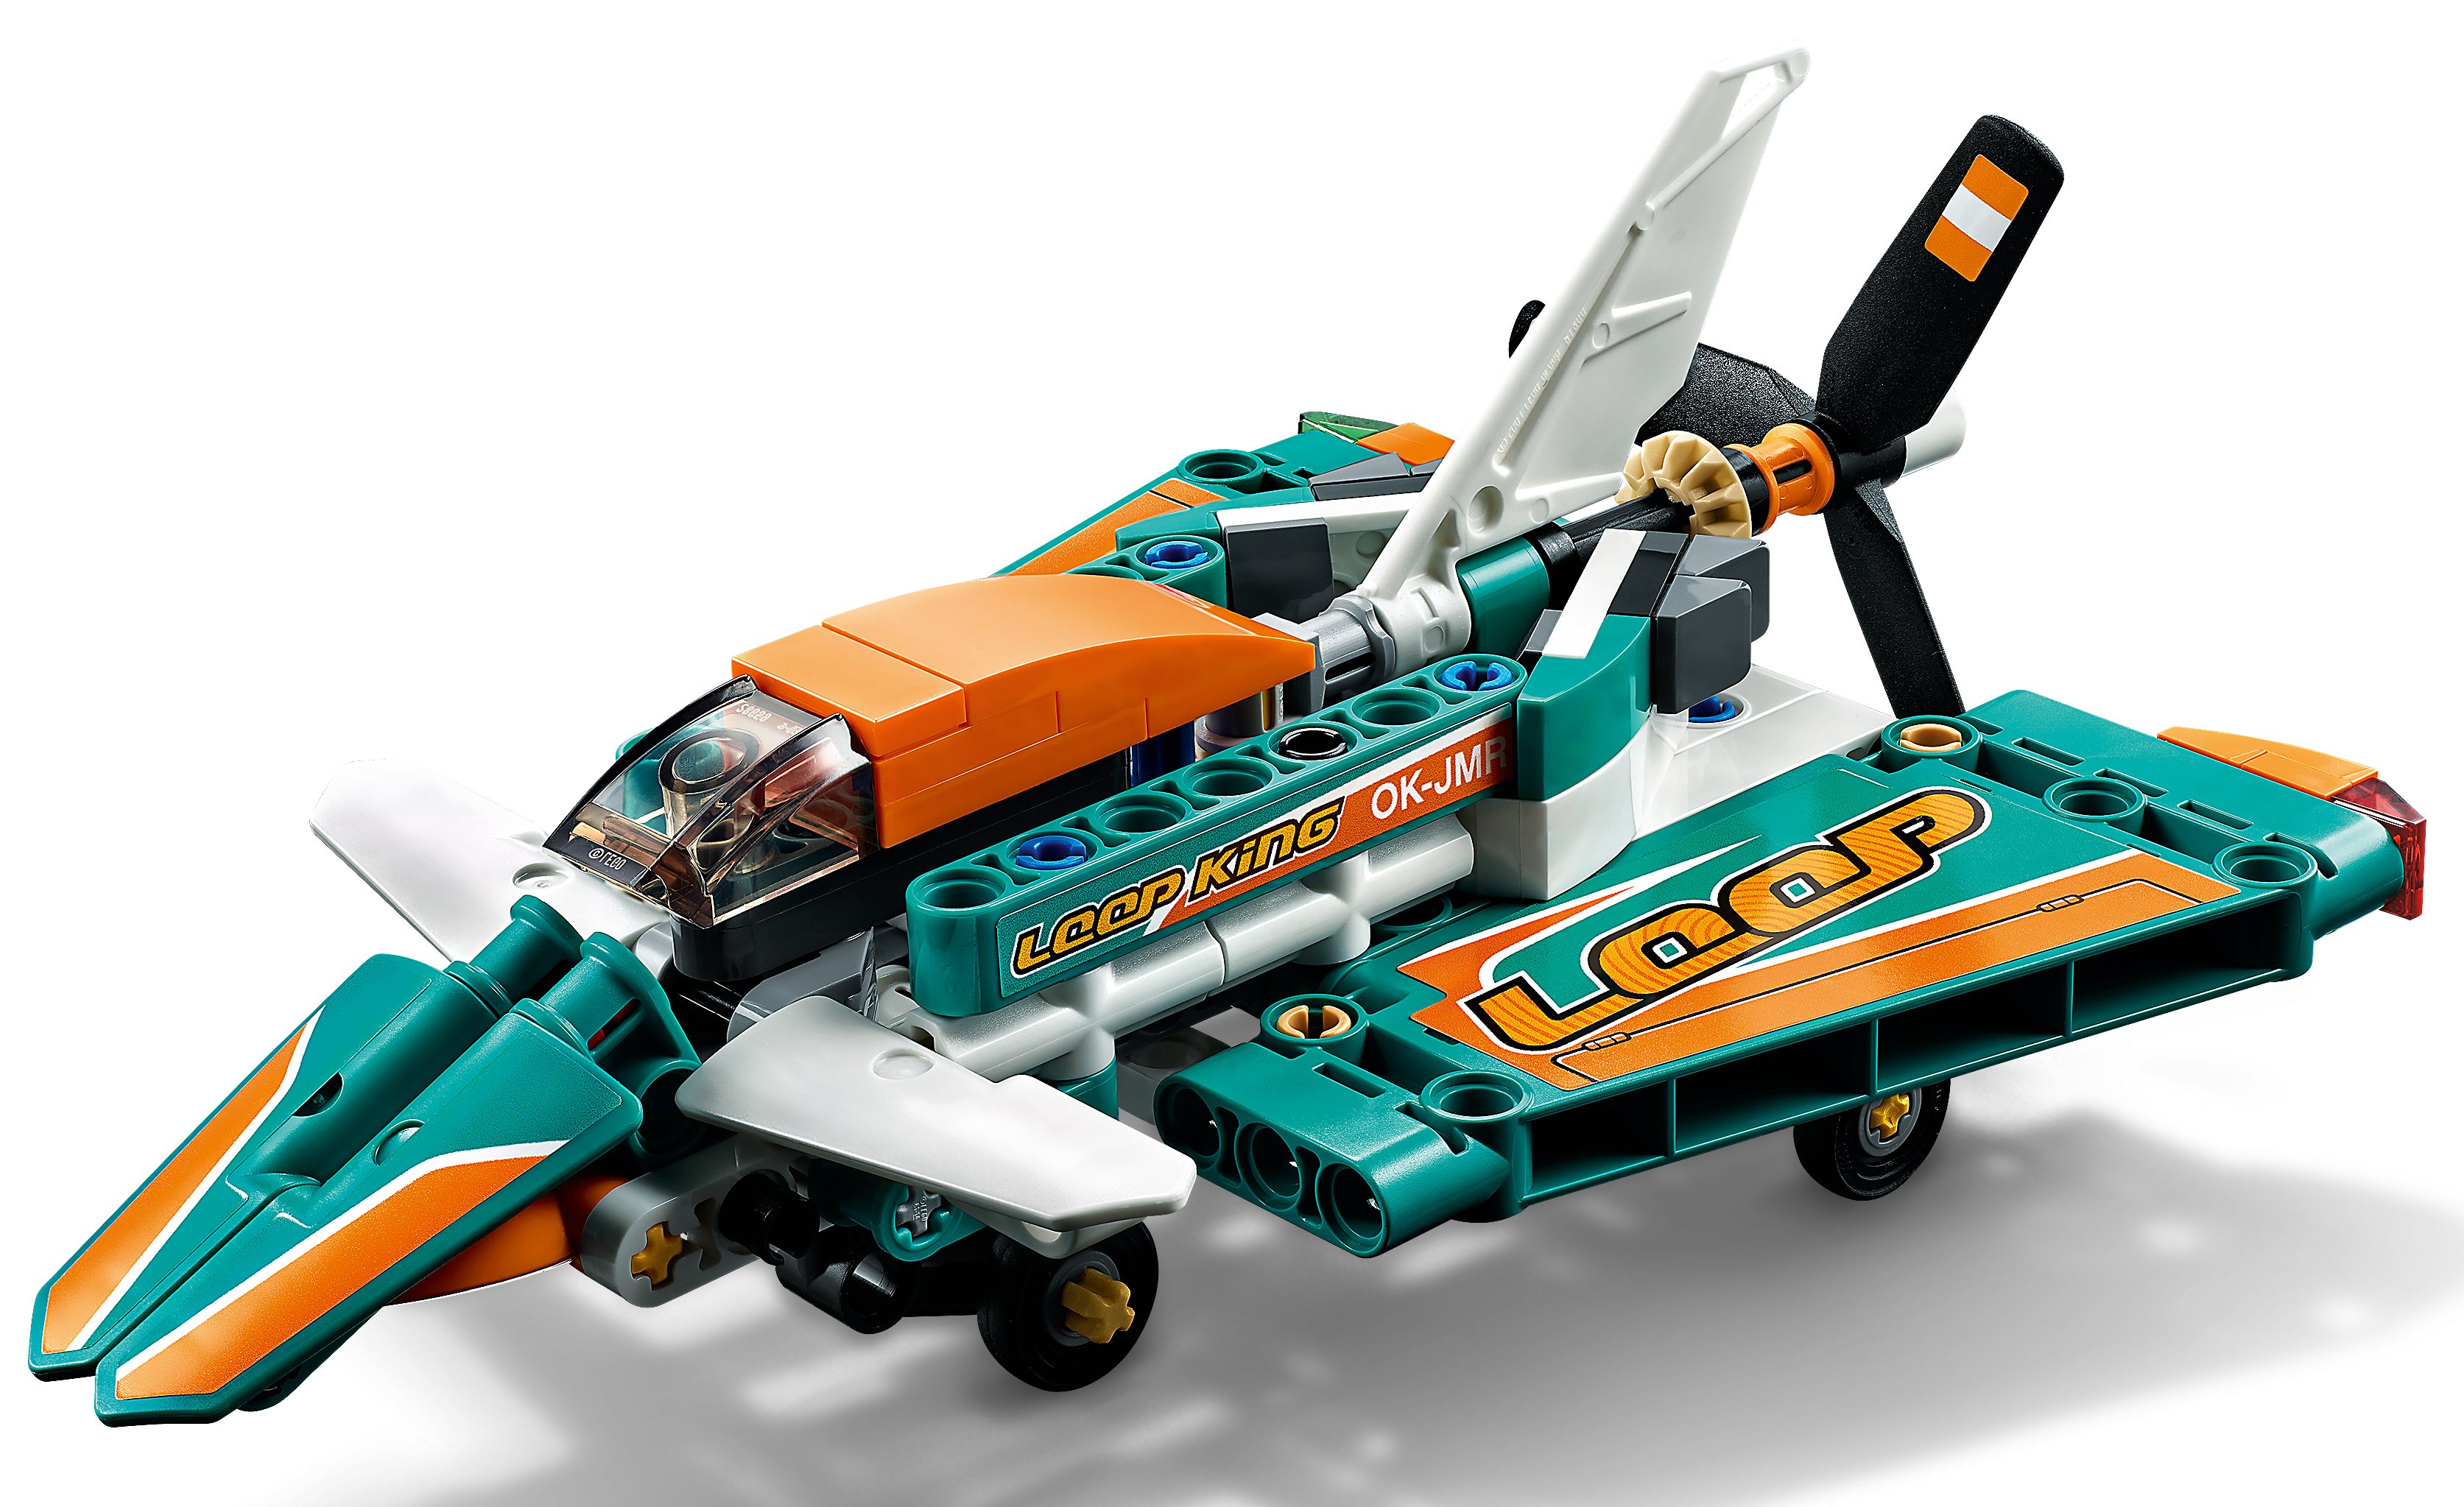 Lego 42117 Technic carrera avión juguete para avión jet 2 en 1 Juego de construcción para niños